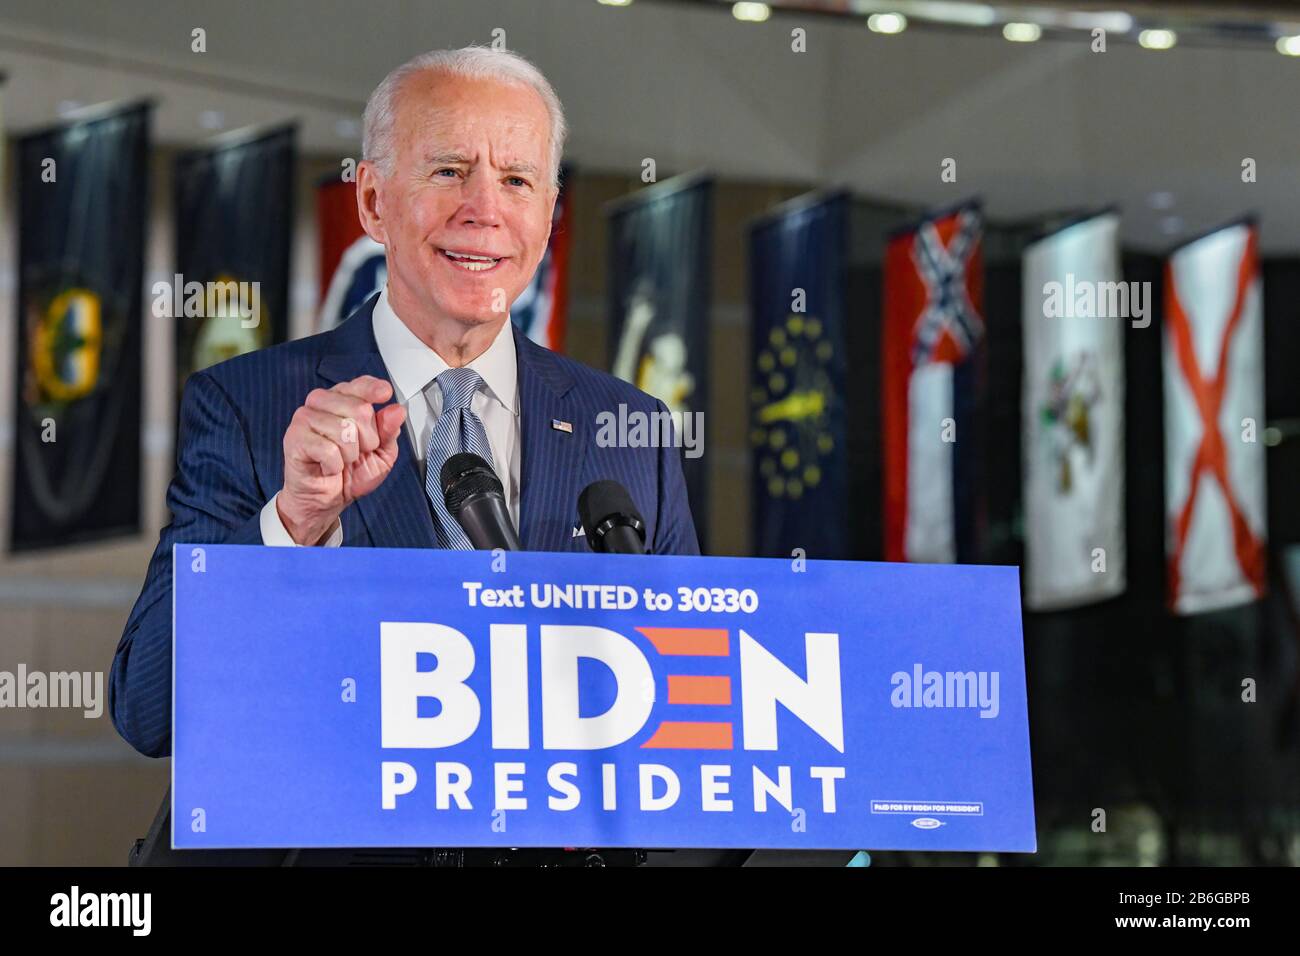 Joe Biden, demokratischer Präsidentschaftskandidat der Vereinigten Staaten und ehemaliger Vizepräsident der Vereinigten Staaten von Amerika, spricht während der Urwahl im National Convention Center in Philadelphia PA Stockfoto